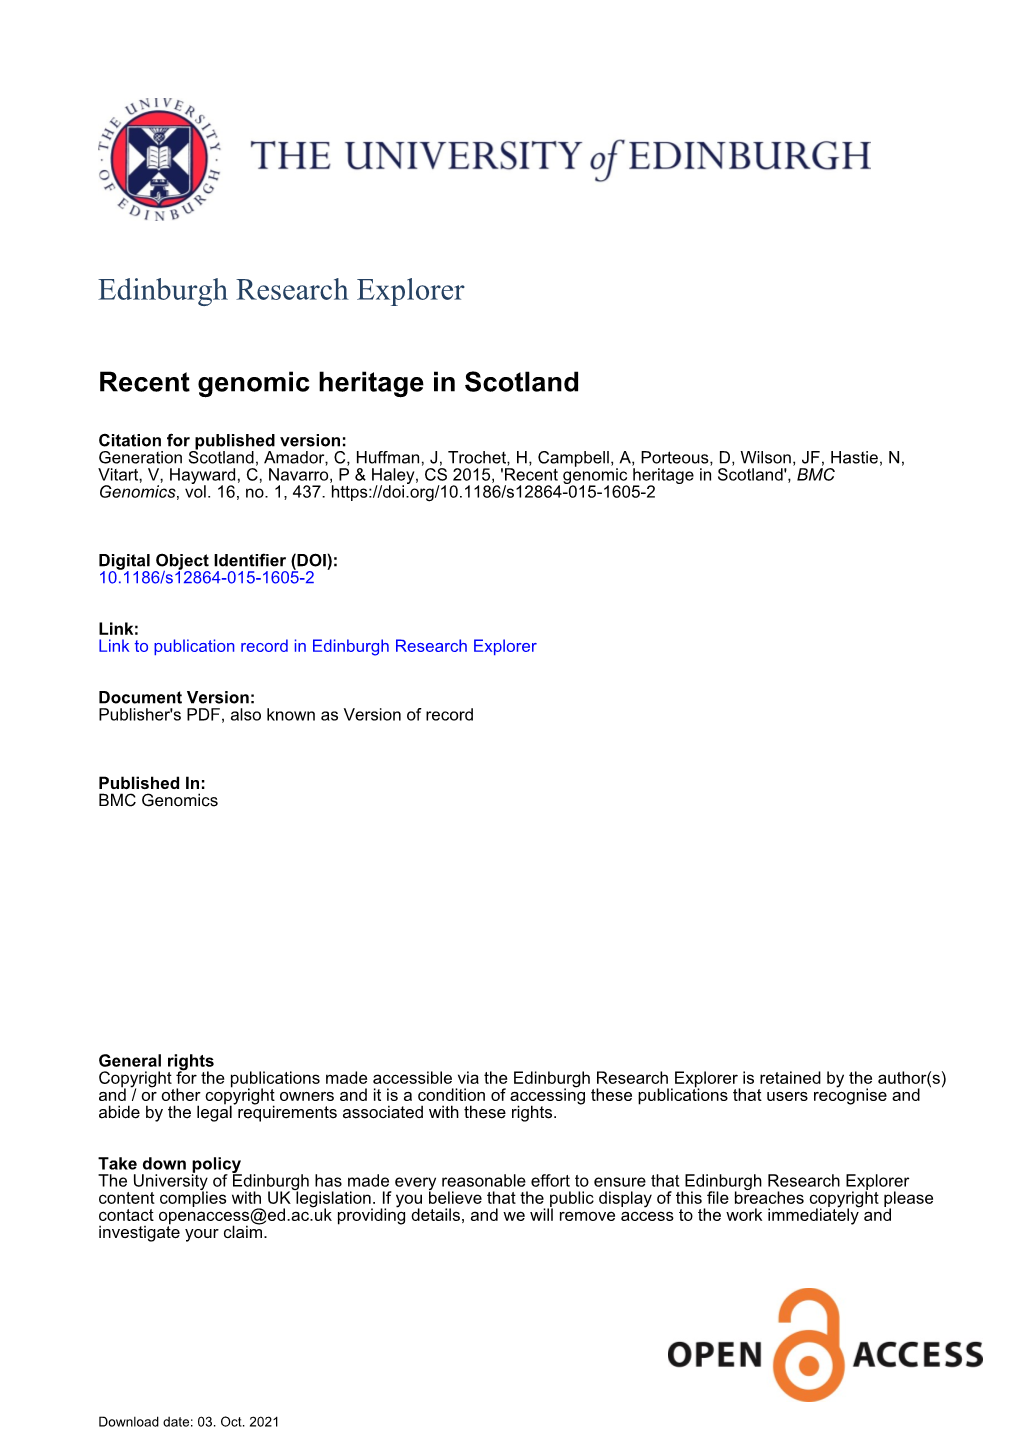 Recent Genomic Heritage in Scotland